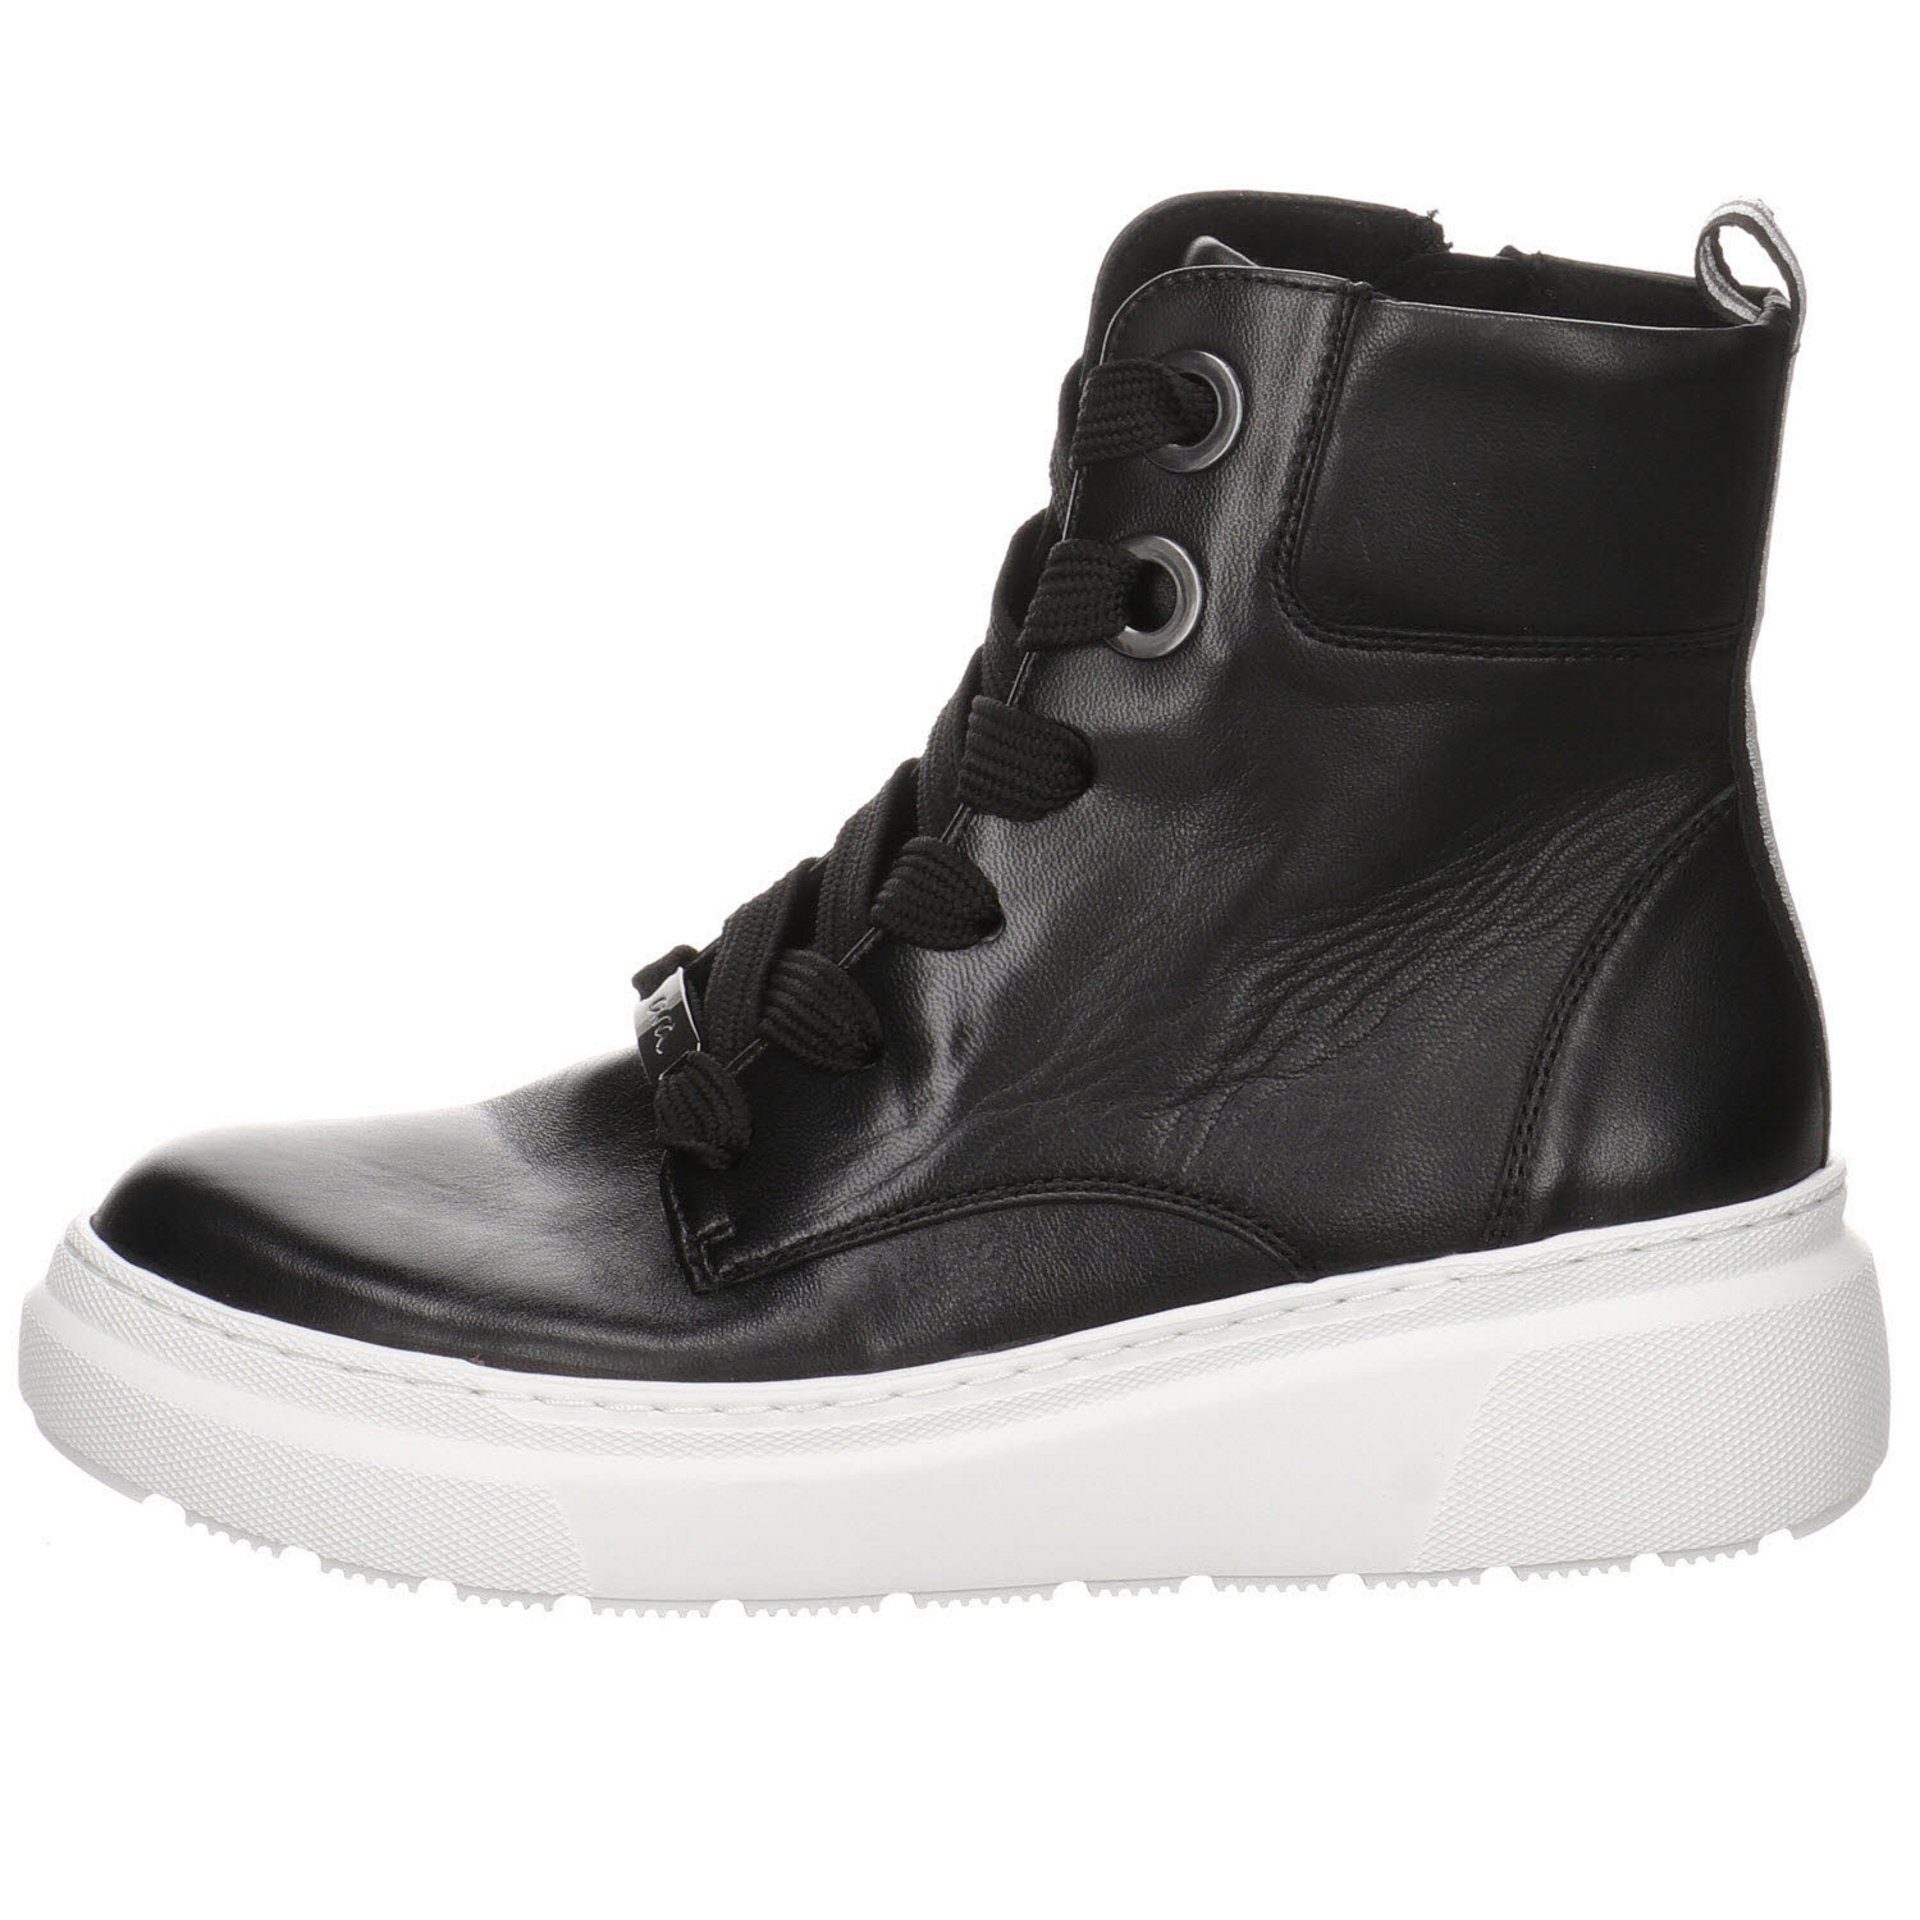 Schuhe Stiefeletten Ara Lausanne-Highsoft Textil dunkel Schnürstiefelette Damen schwarz